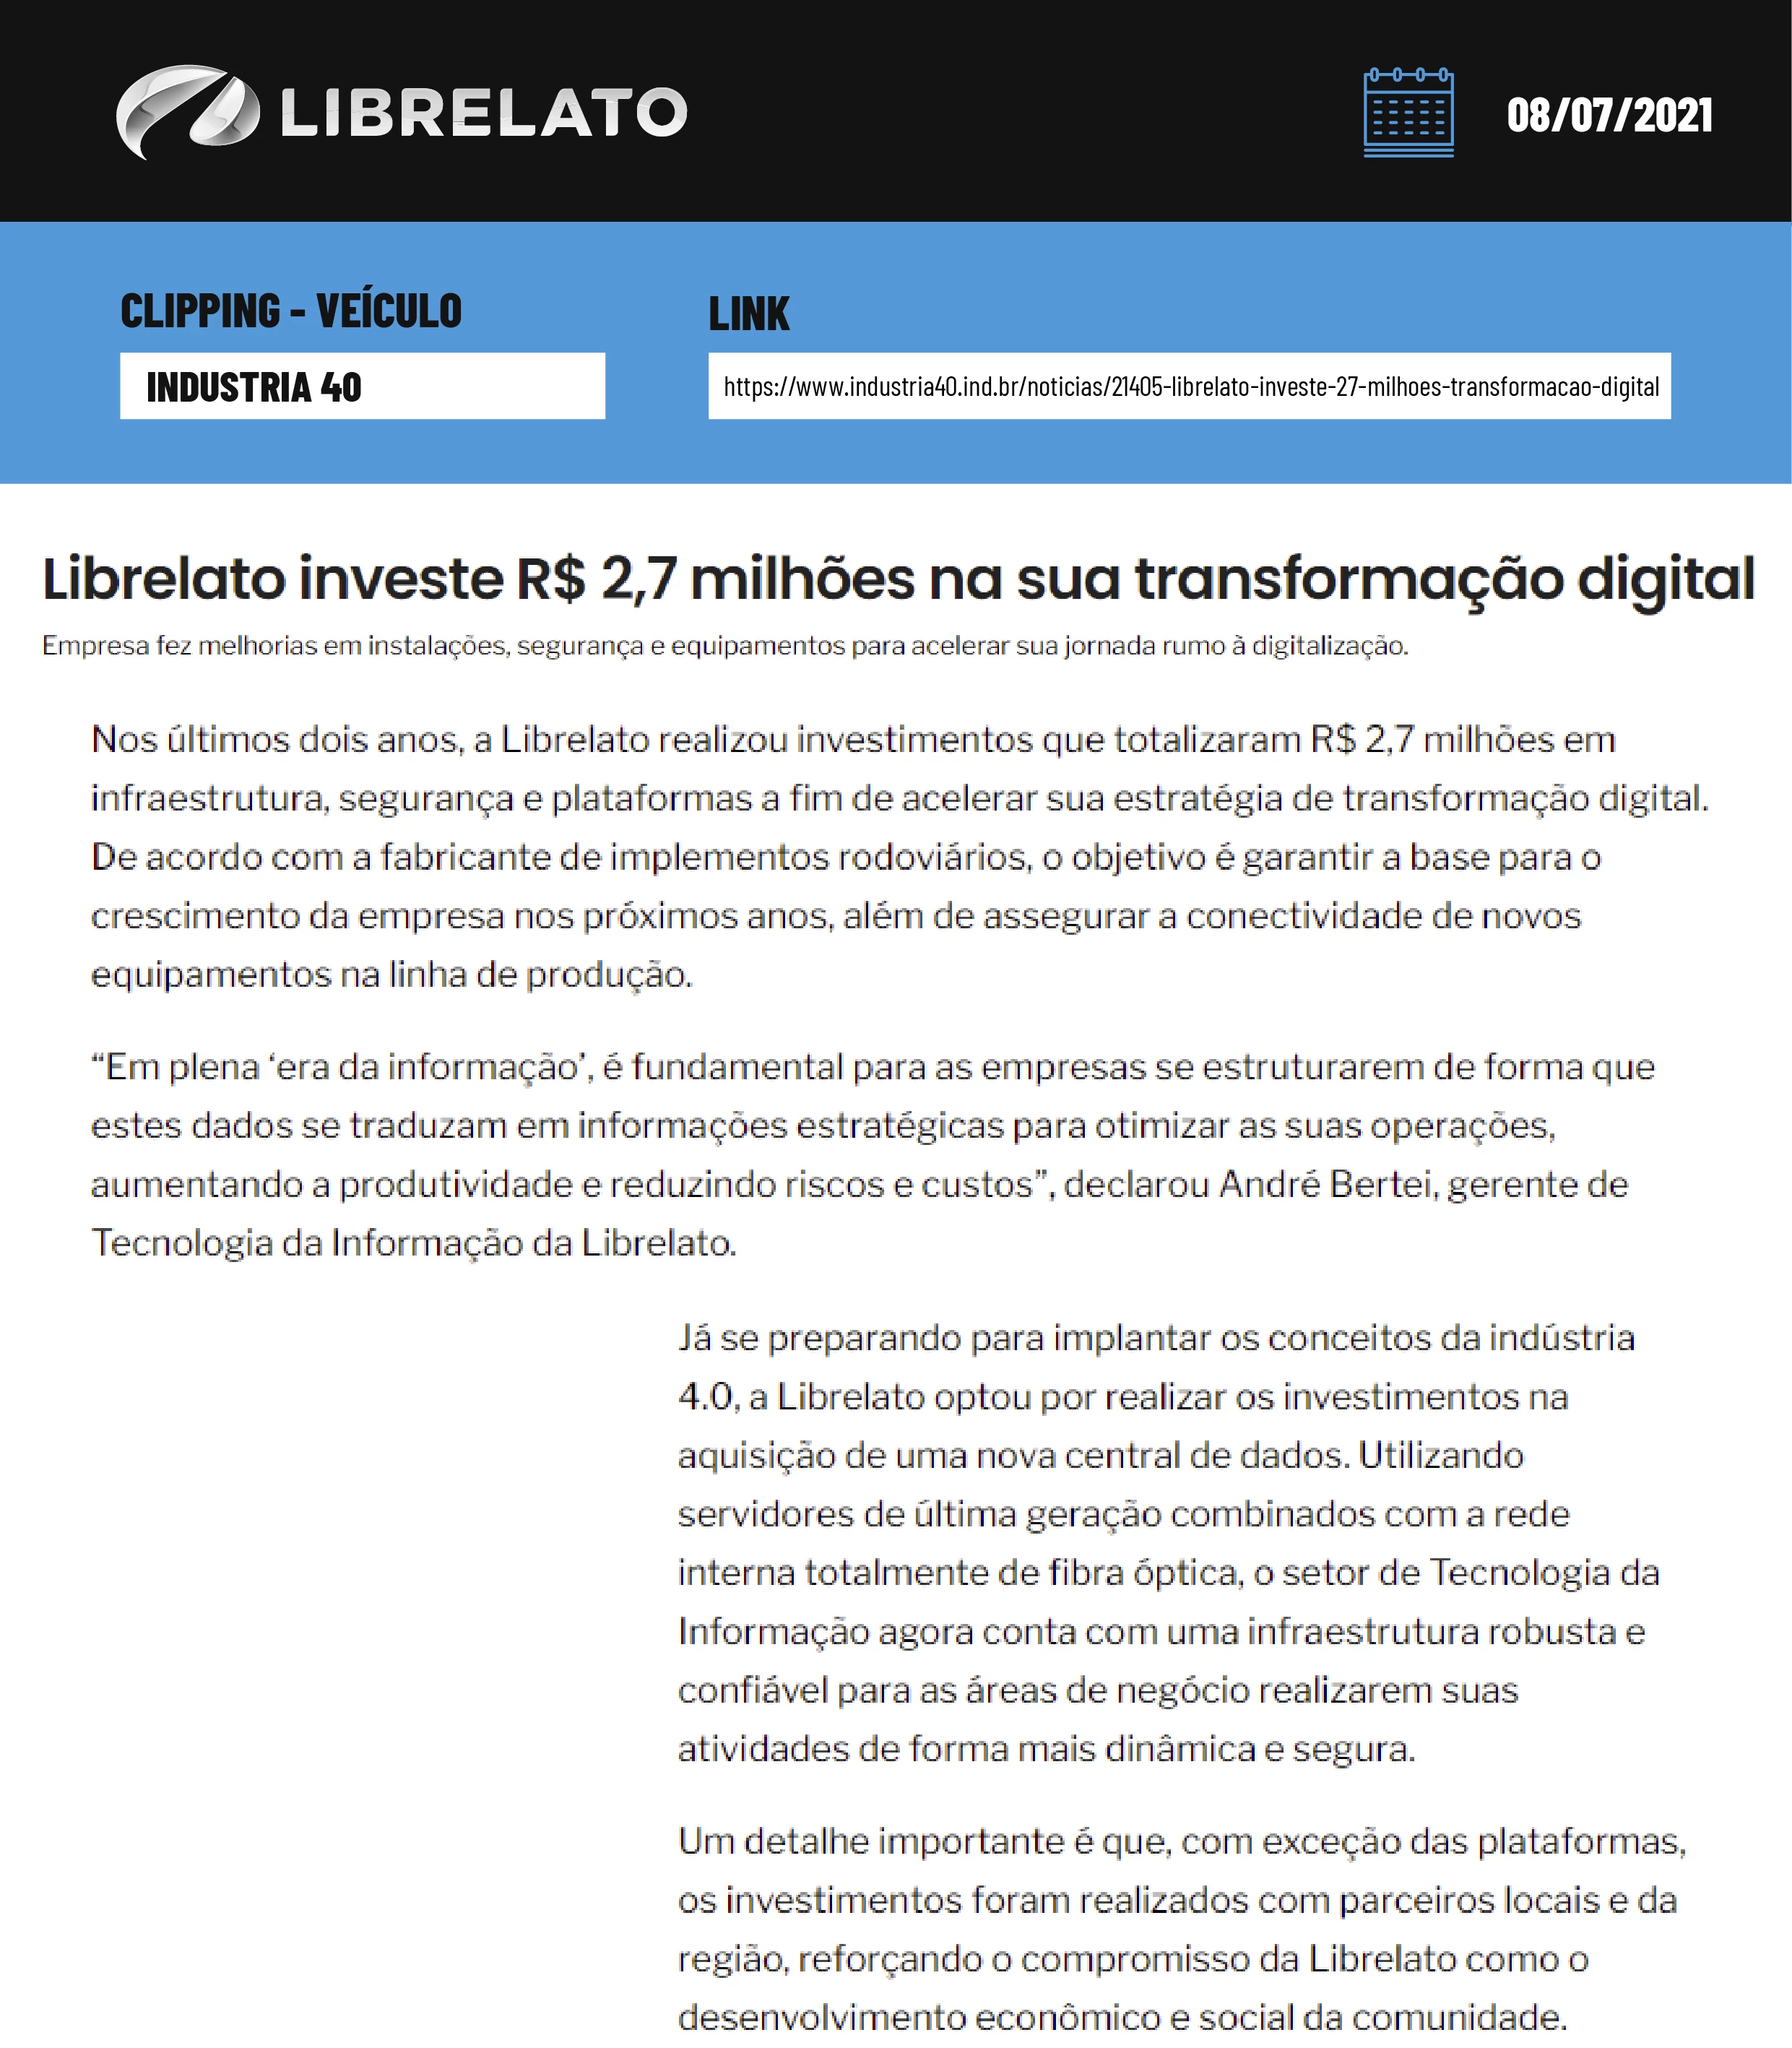 Librelato investe R$ 2,7 milhões na sua transformação digital